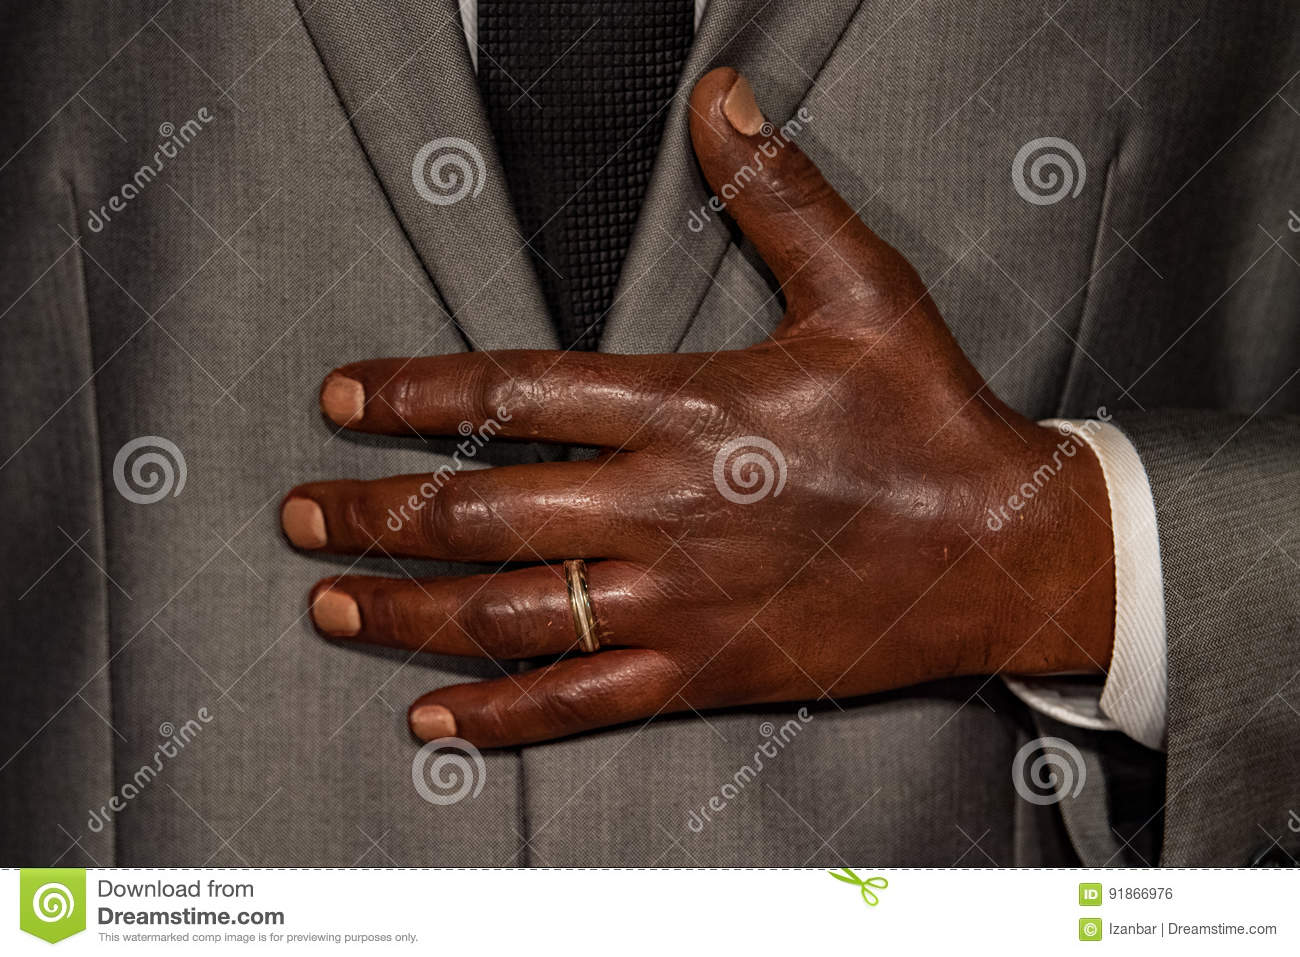 black-man-hand-wedding-ring-close-up-detail-91866976.jpg